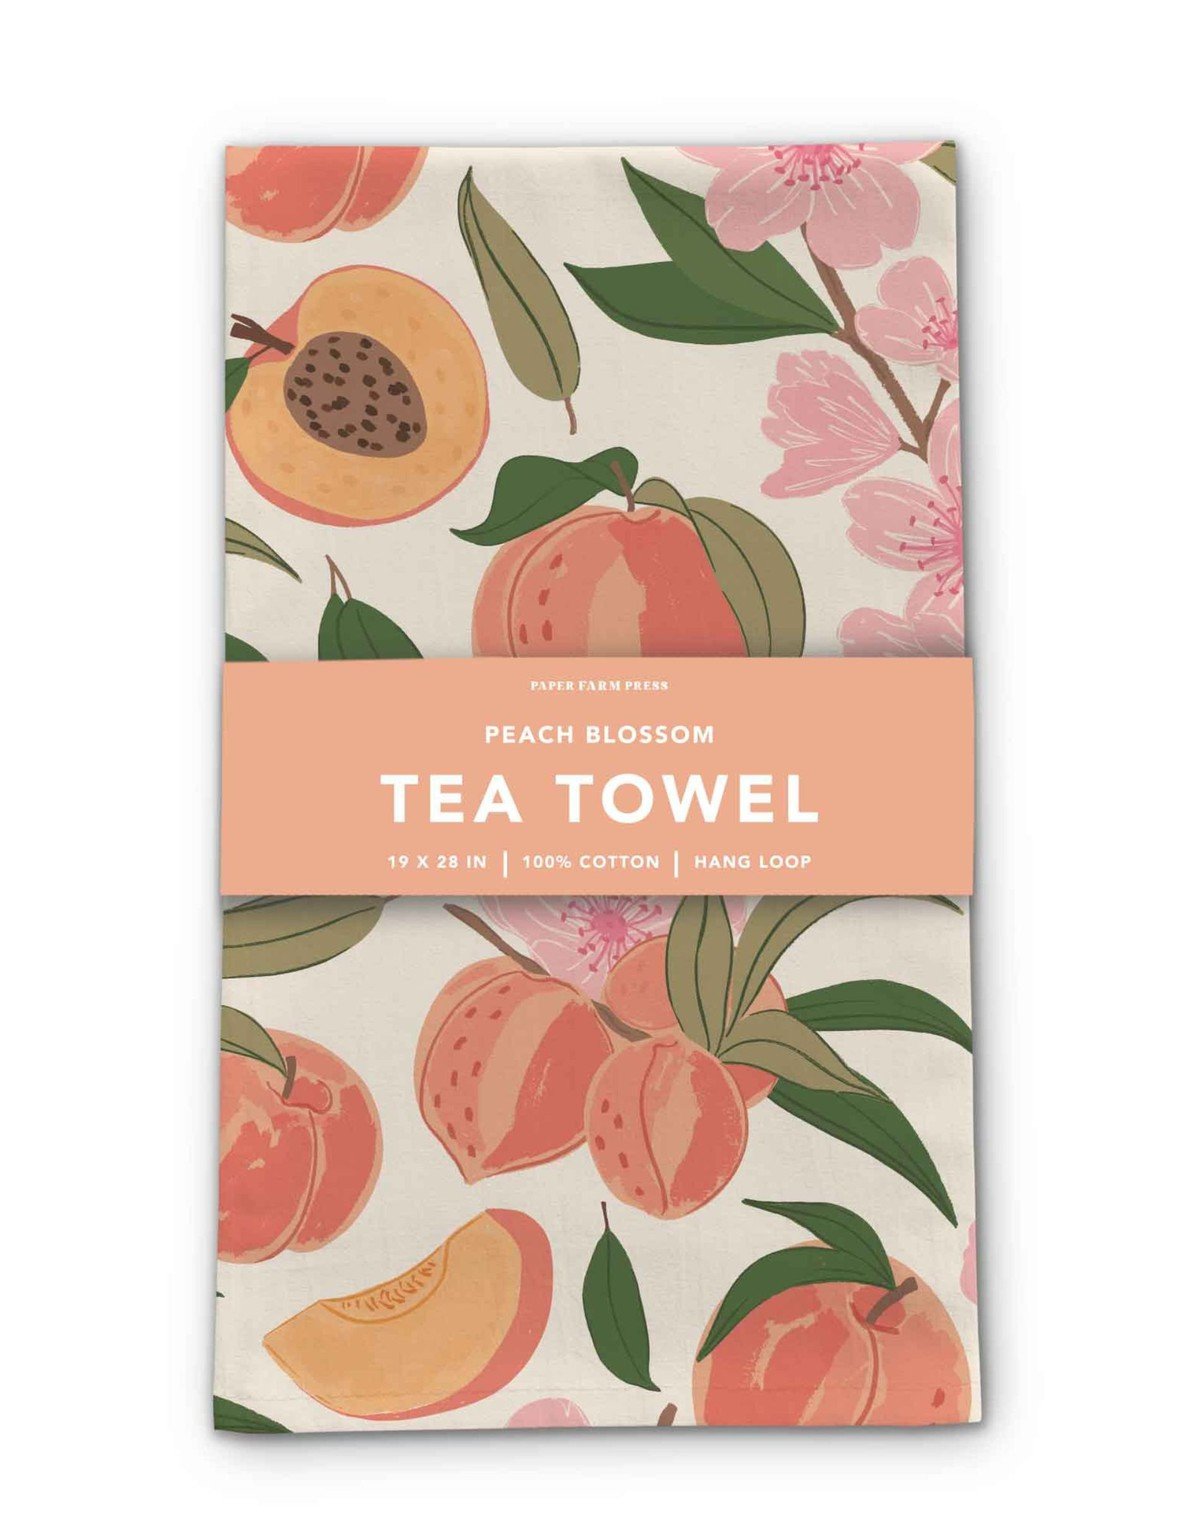 Peach Blossom Tea Towel item